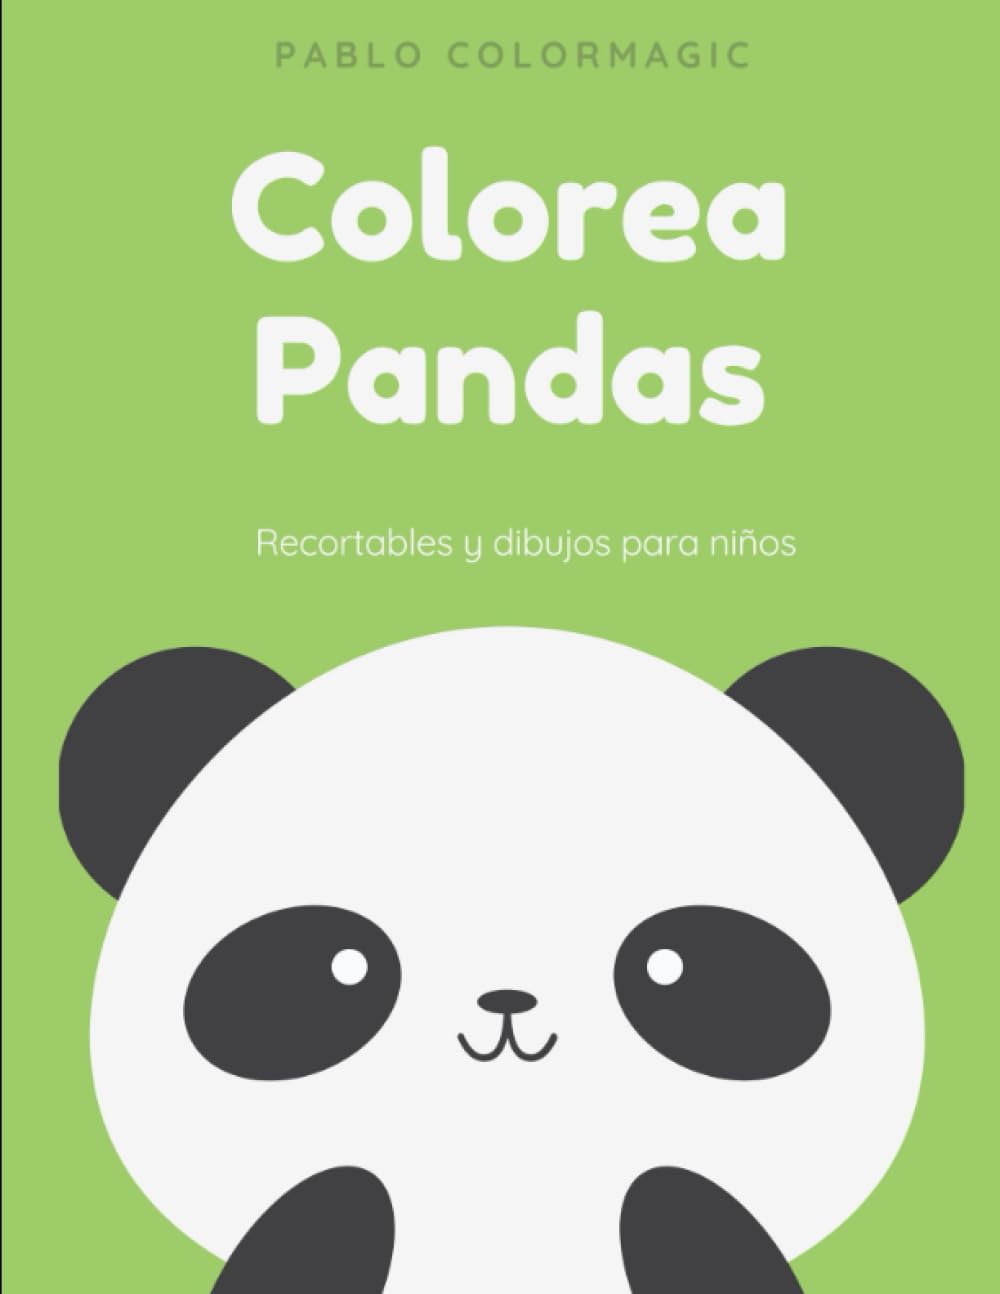 Libro: Colorea Padas - Recortables y dibujos para niños por Pablo Colormagic